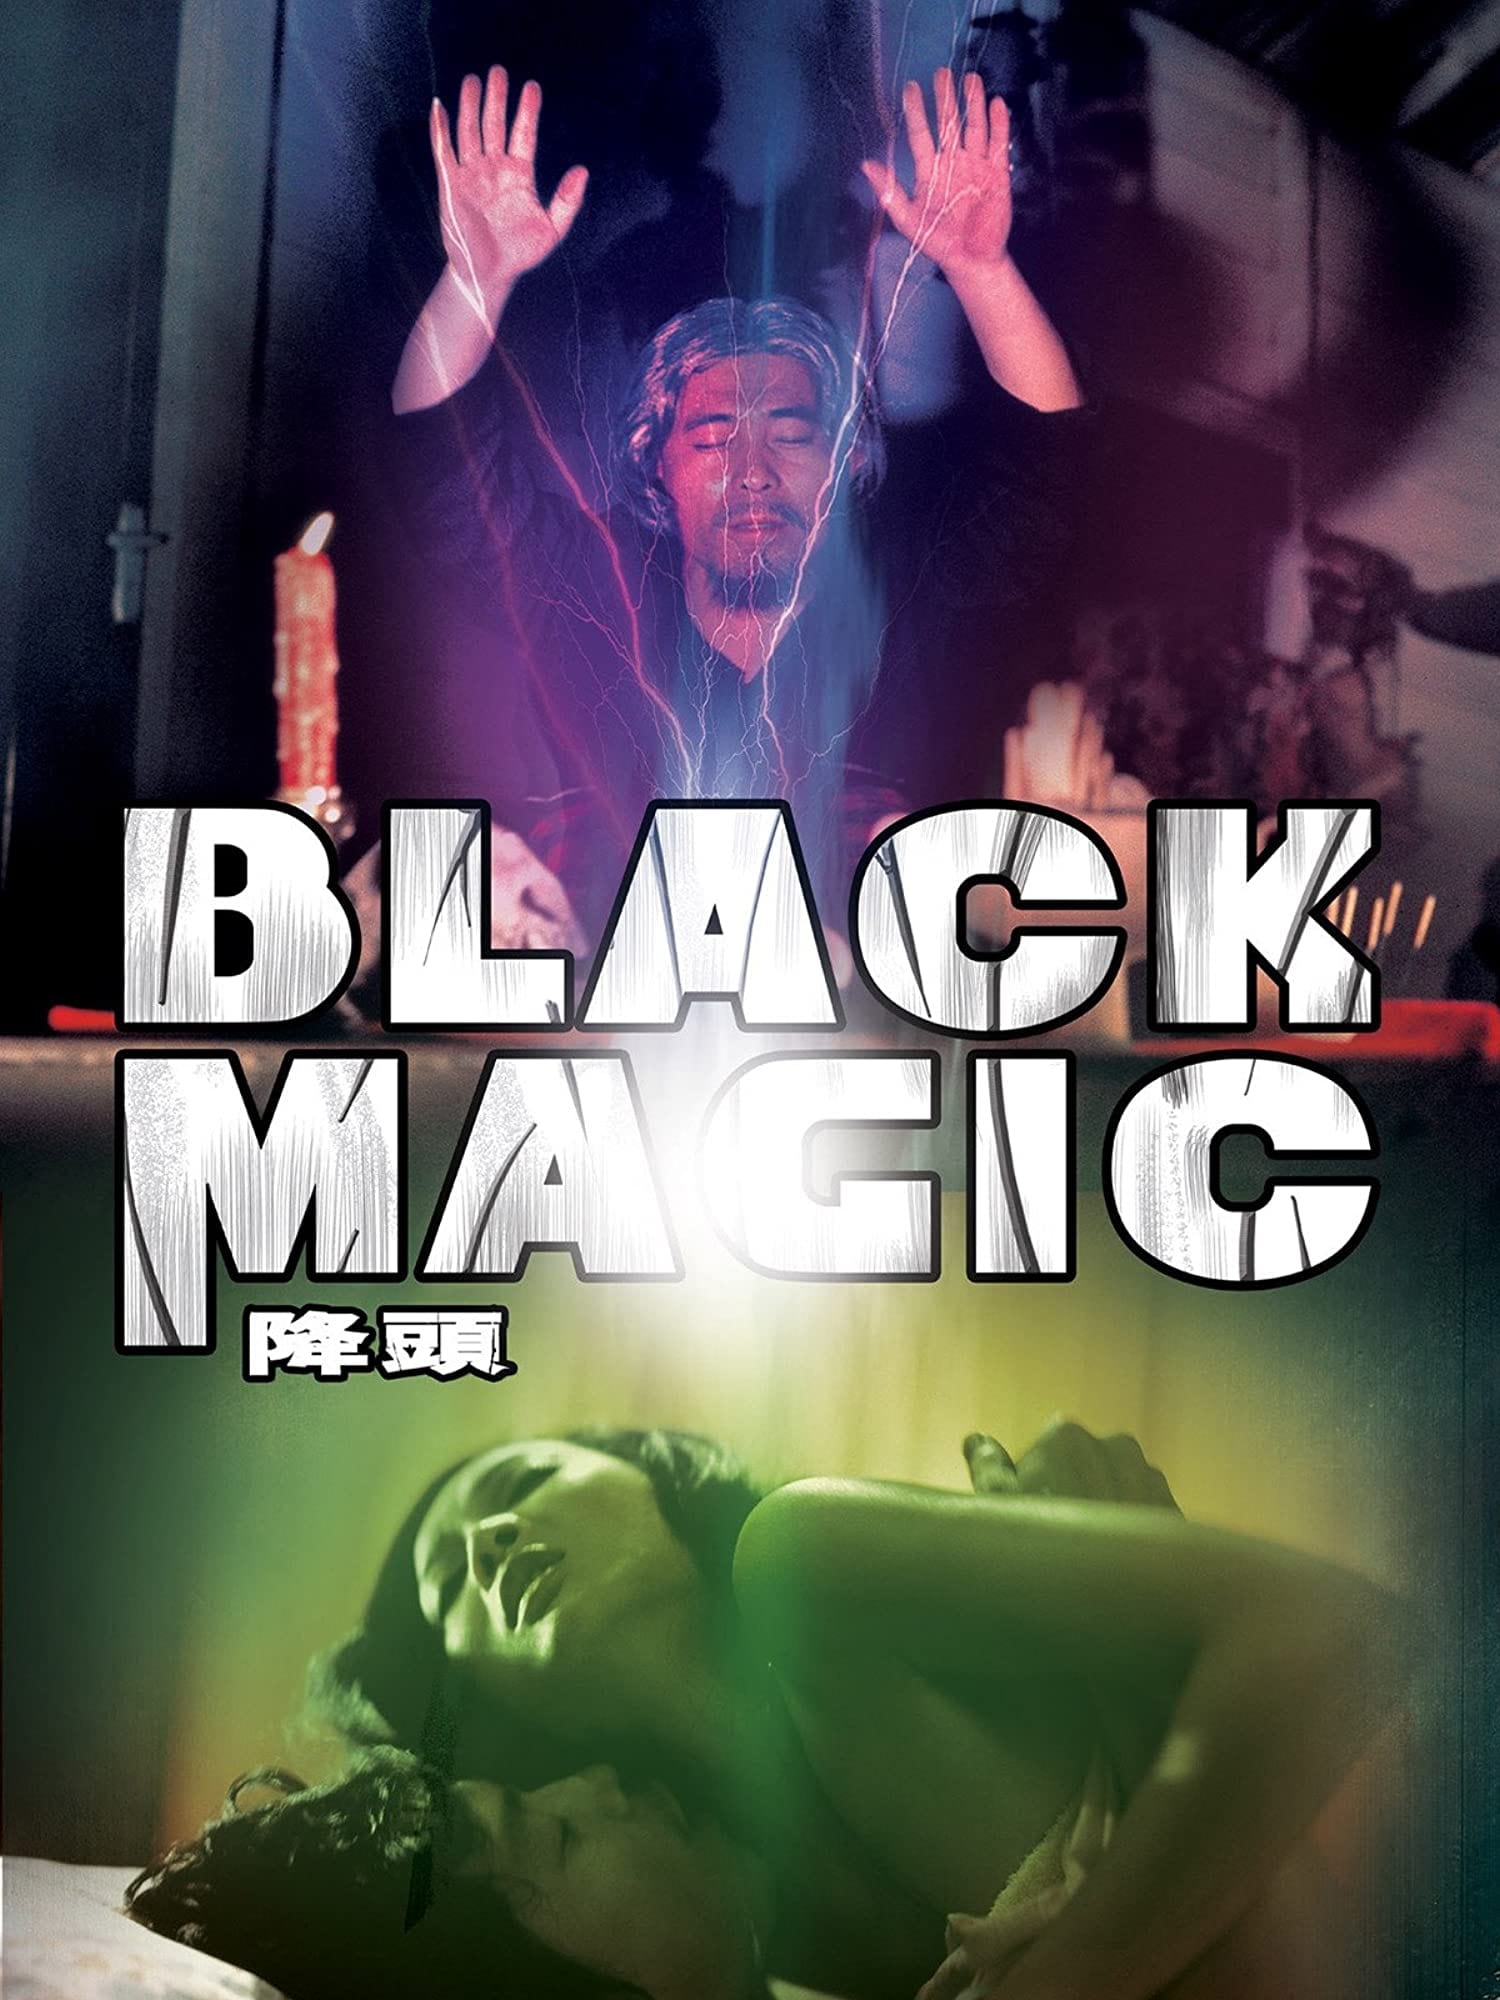 ดูหนังออนไลน์ฟรี Black Magic คาถา